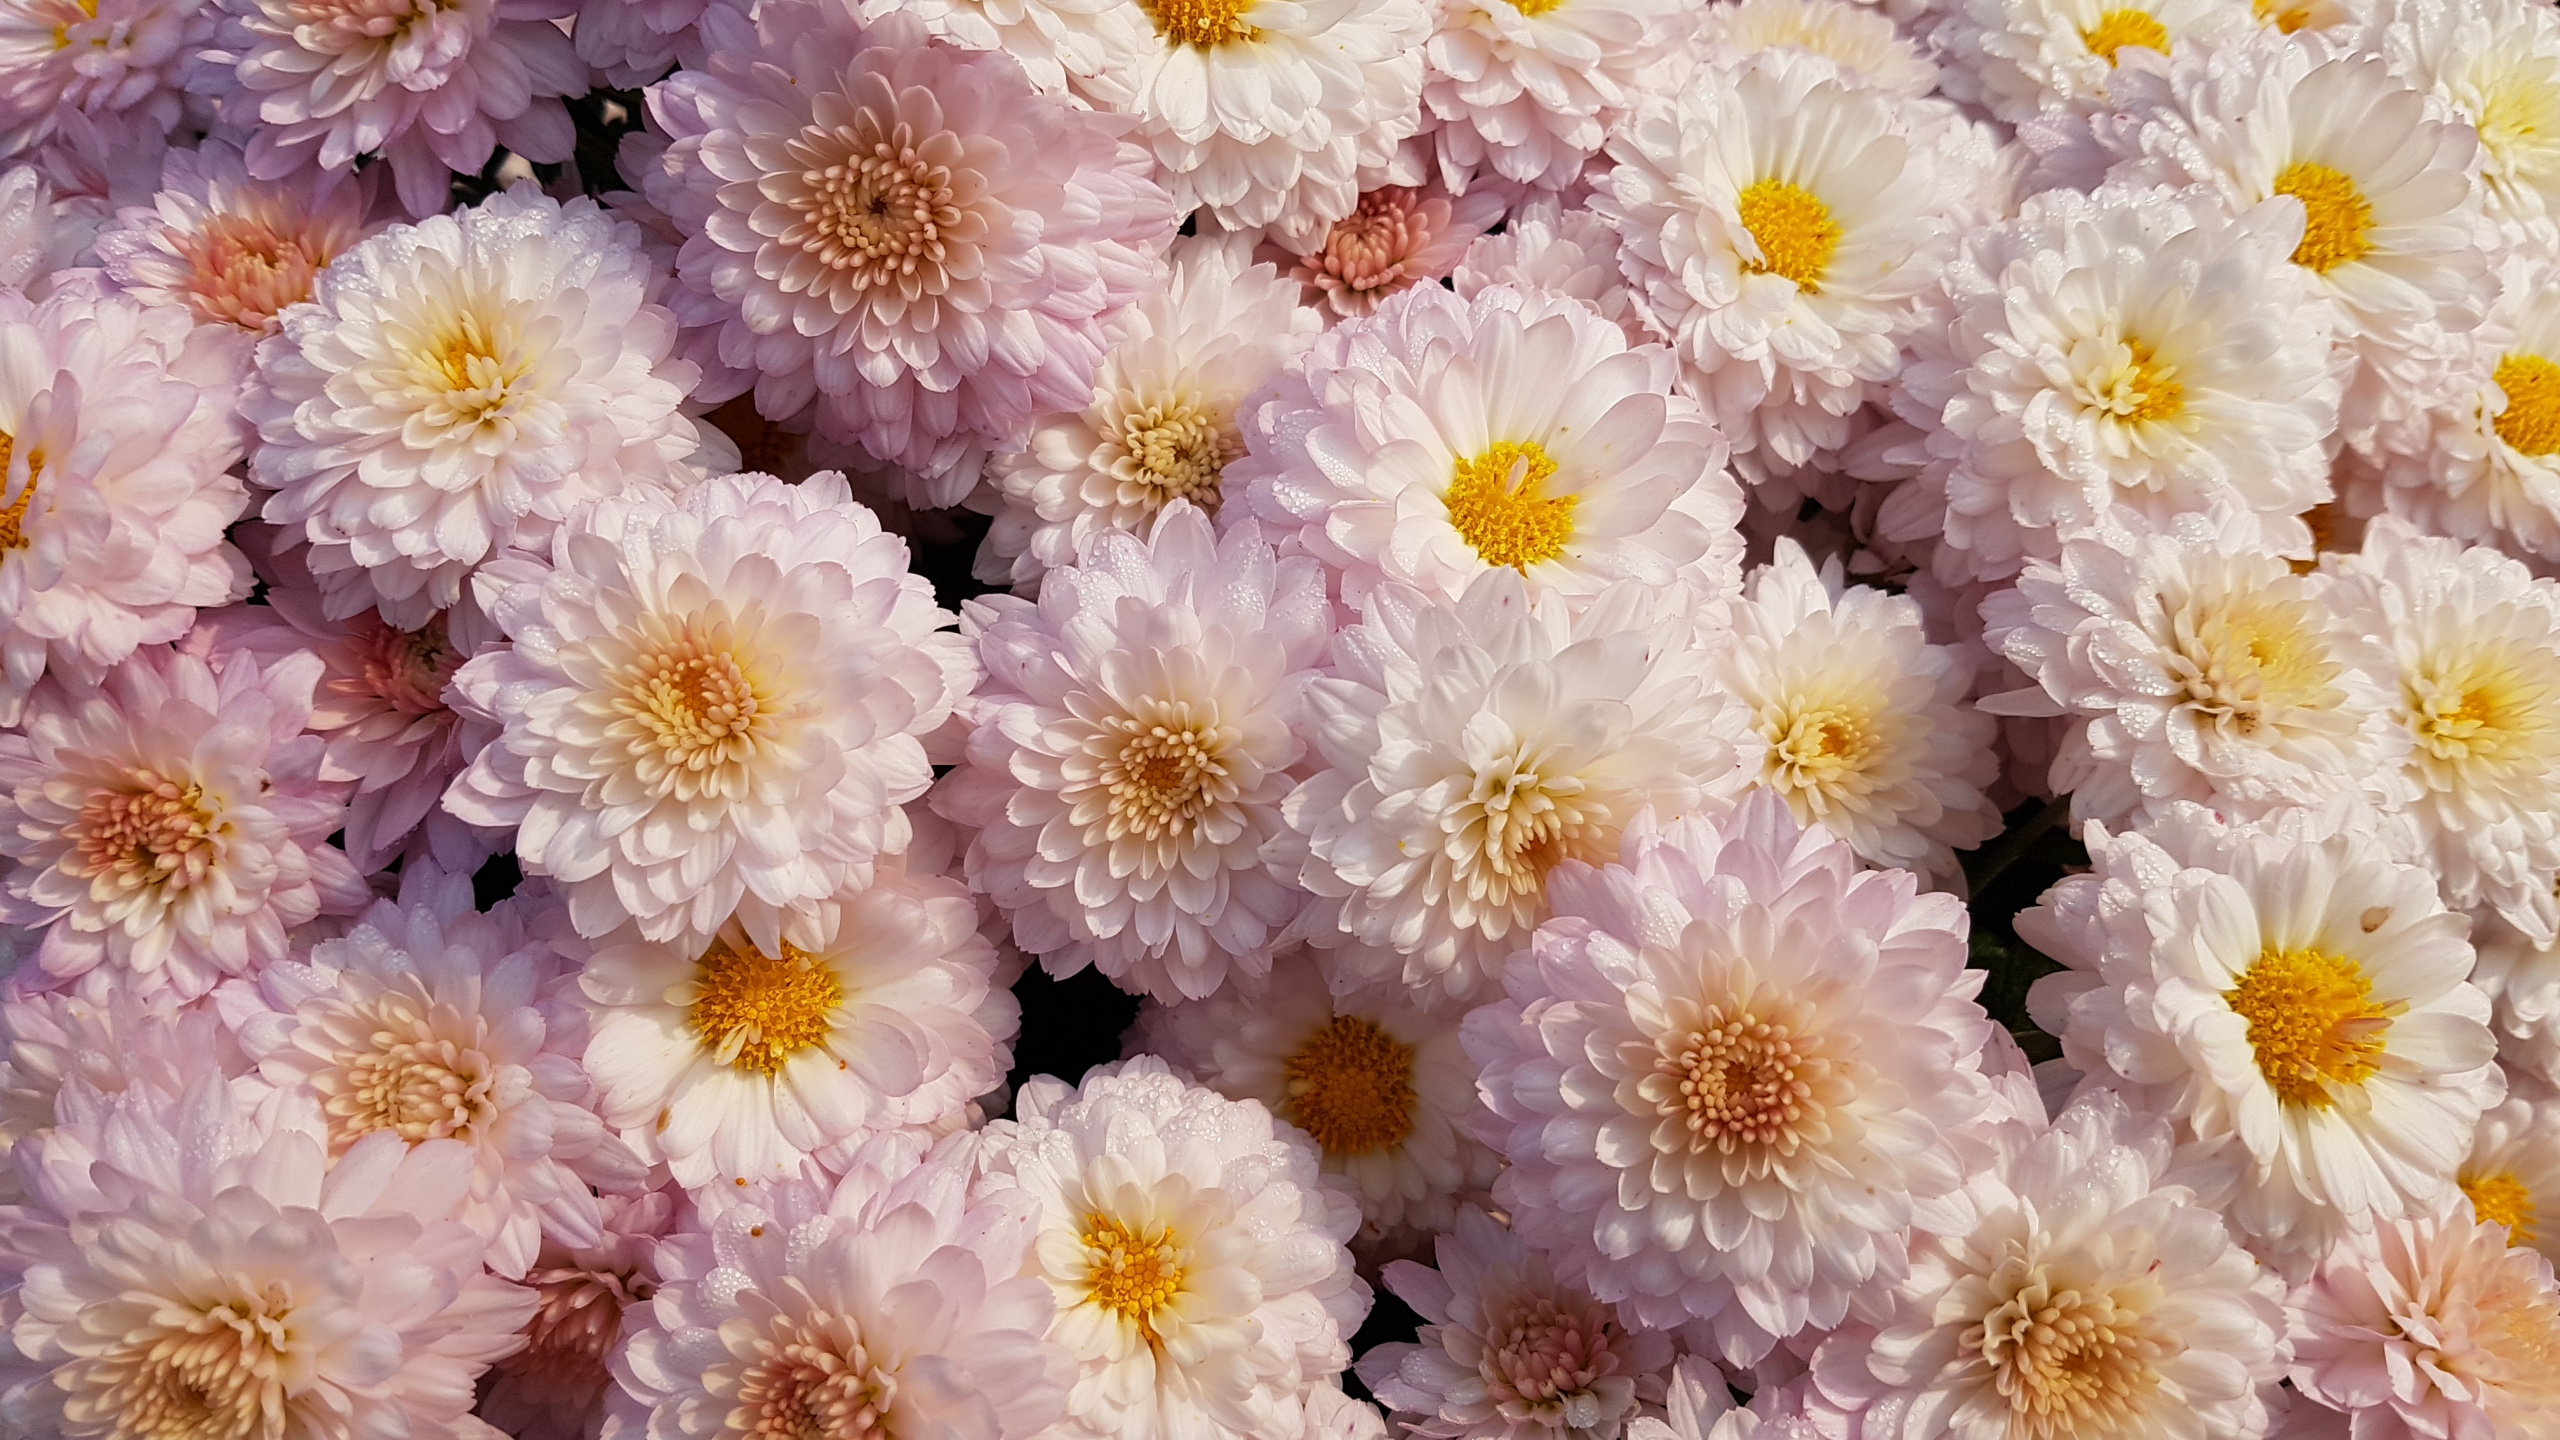 Flores Blancas y Moradas en Fotografía de Cerca. Wallpaper in 2560x1440 Resolution